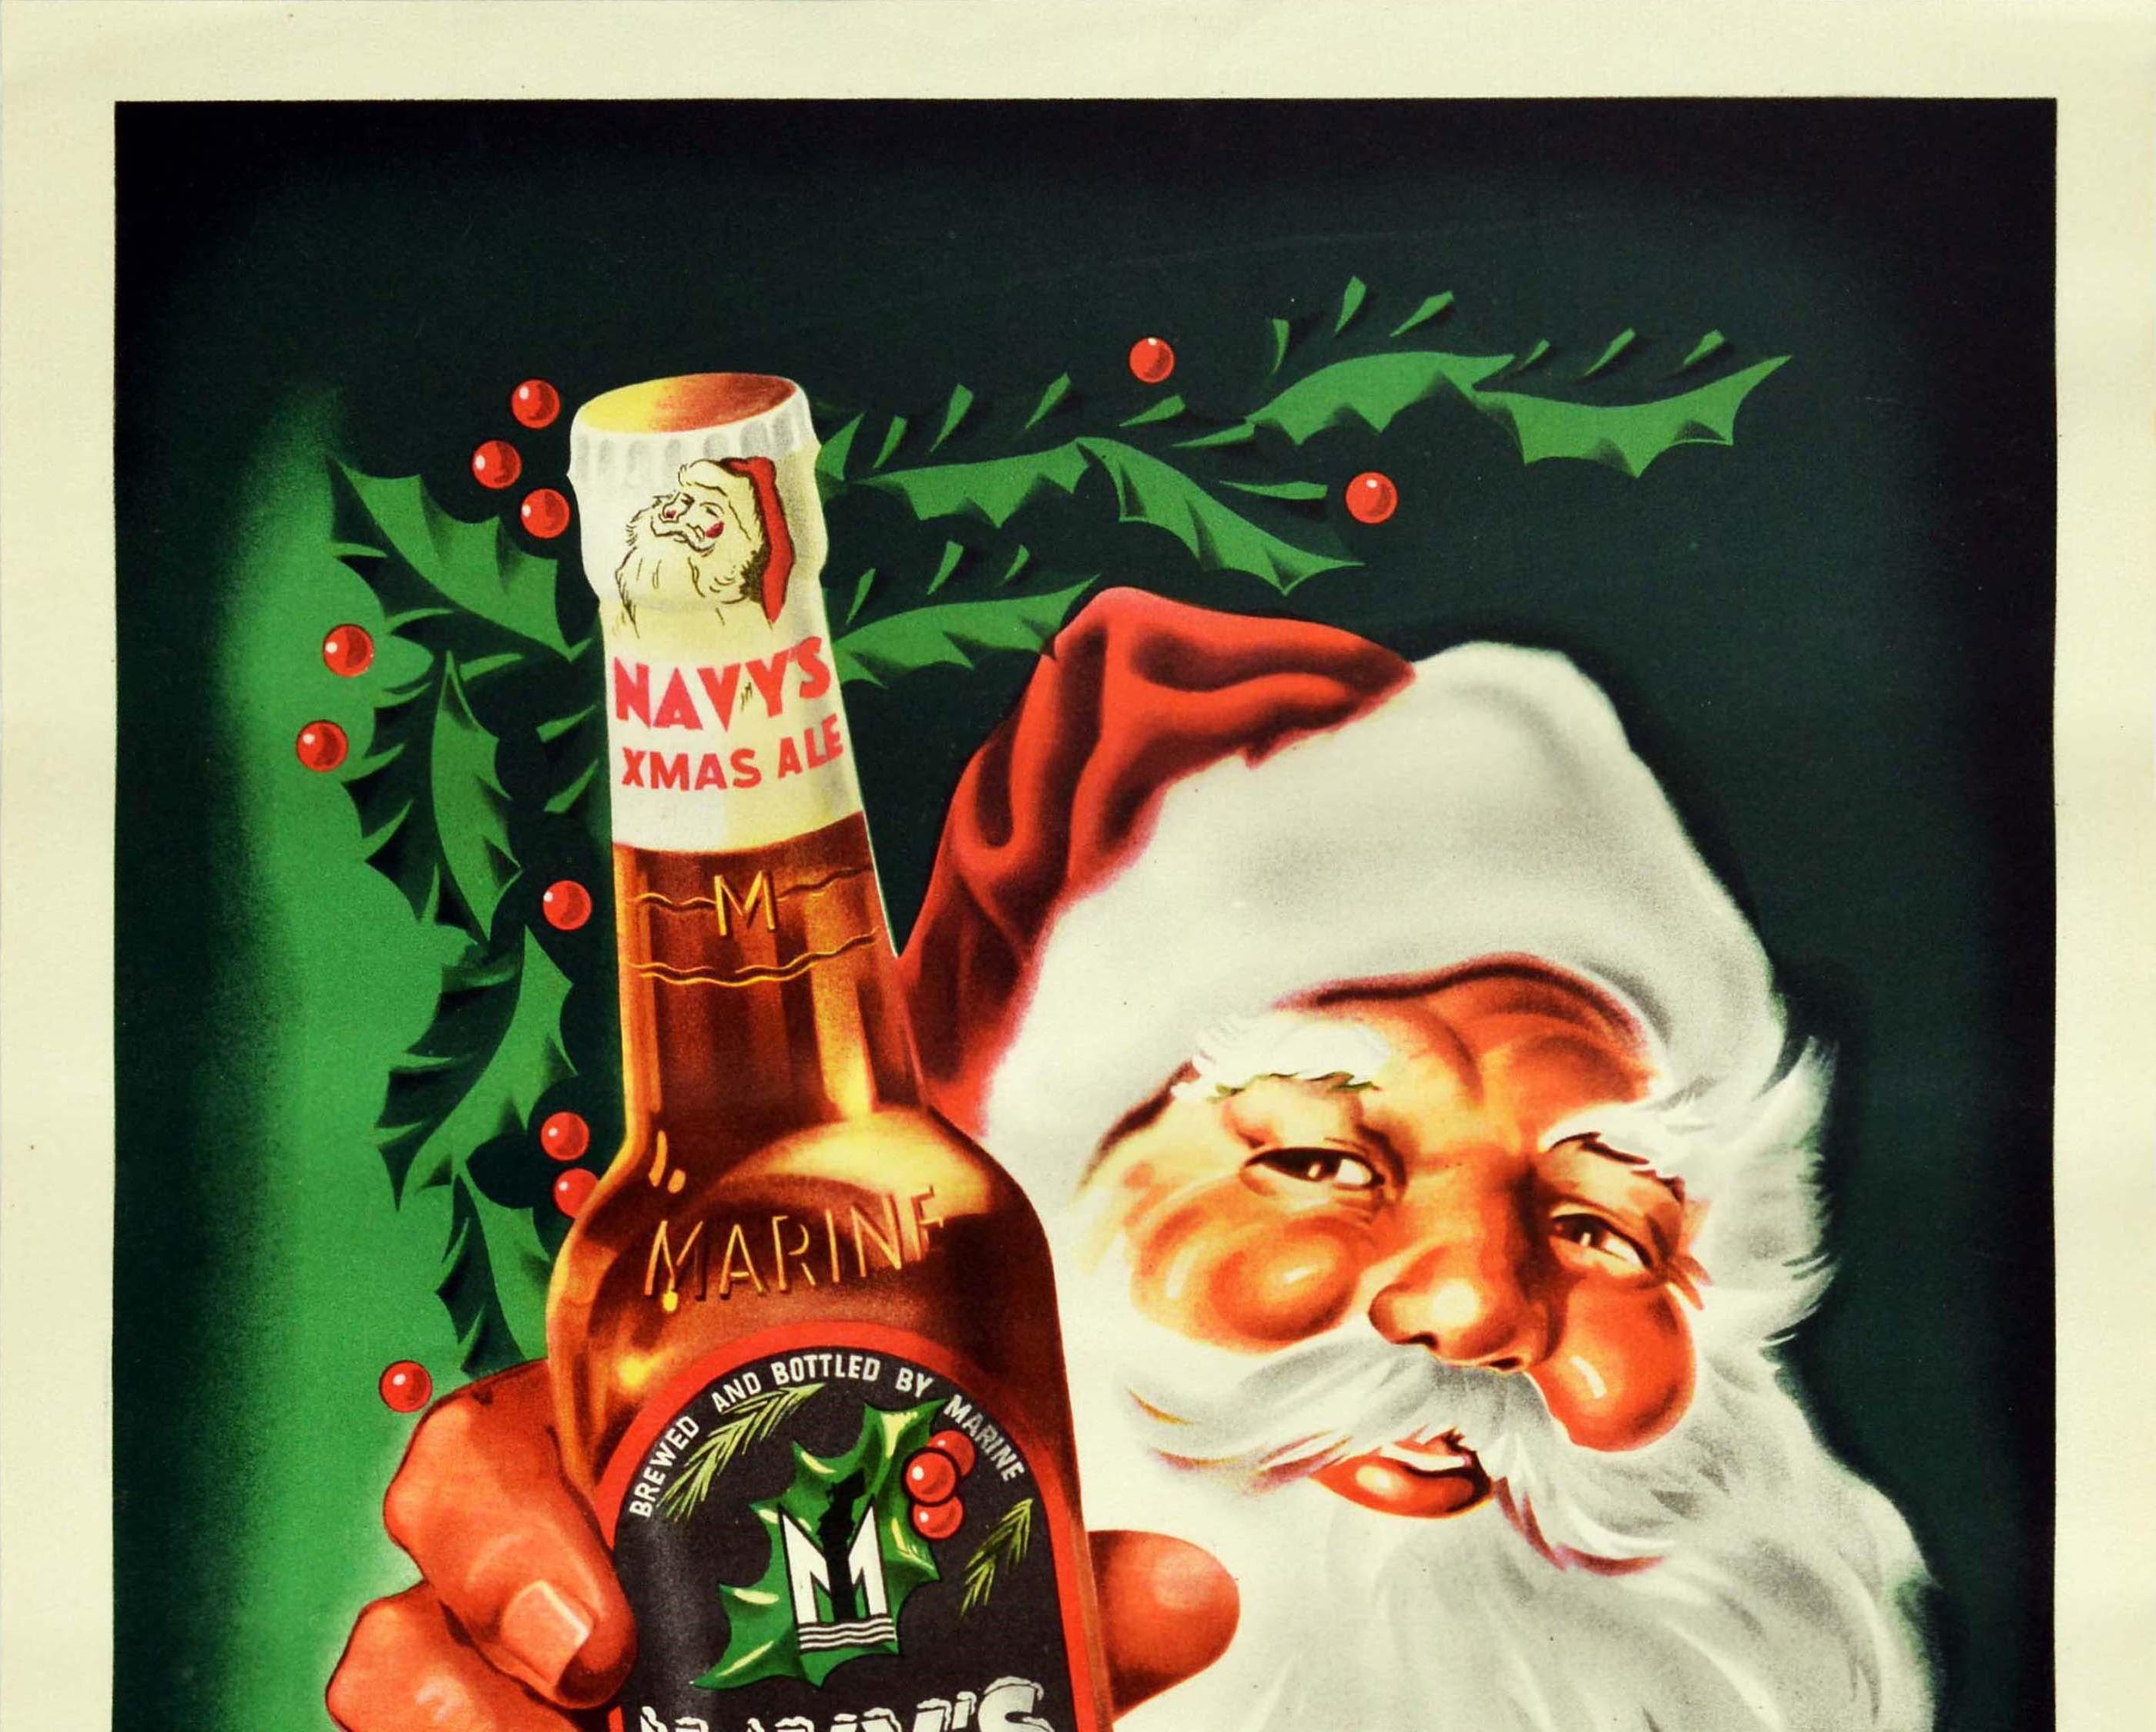 Affiche publicitaire originale pour la bière Navy's Xmas Ale, brassée et embouteillée par Marine (une brasserie belge), avec un design amusant représentant un Père Noël souriant avec des joues roses, une grande barbe blanche et une moustache,